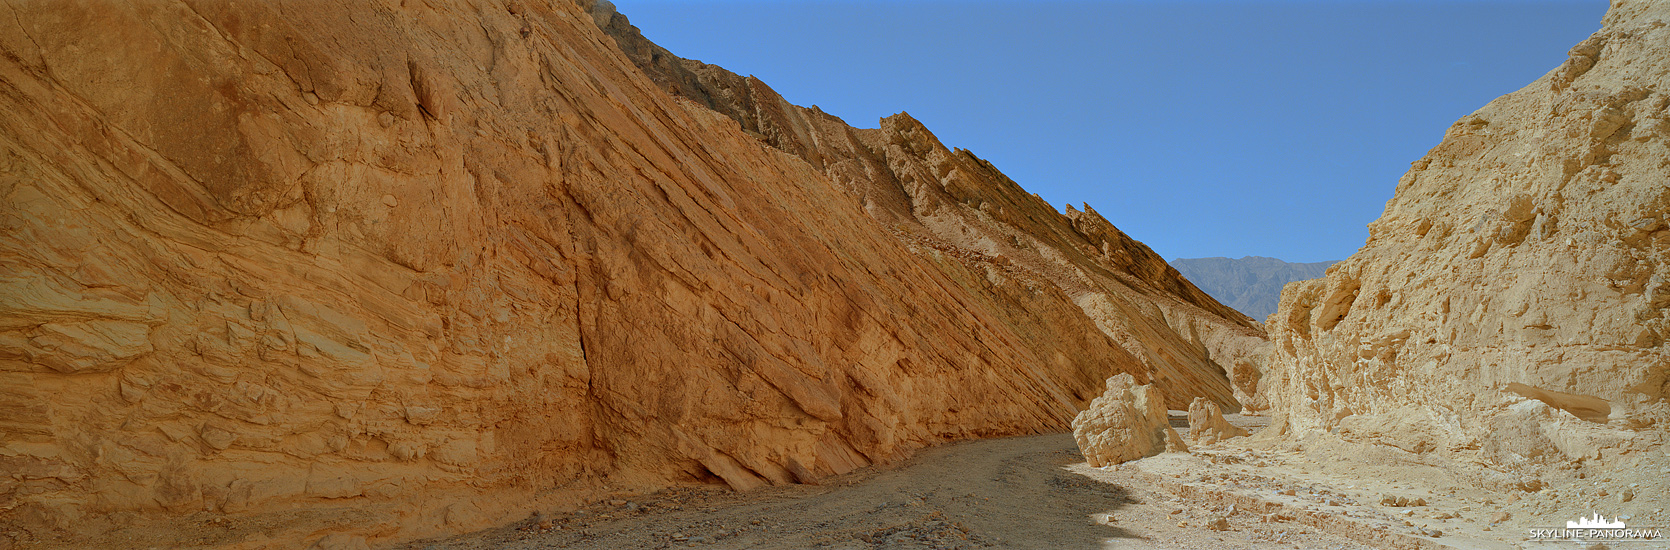 Death Valley als 6x17 Panorama - Eine kleine Wanderung oder wie man es landestypisch ausdrückt - a short hike - durch den Golden Canyon, der in diesem Panorama seinem Namen alle Ehre macht. Die umliegenden Gesteinsformationen leuchten am frühen Nachmittag in sattem Gelb. 